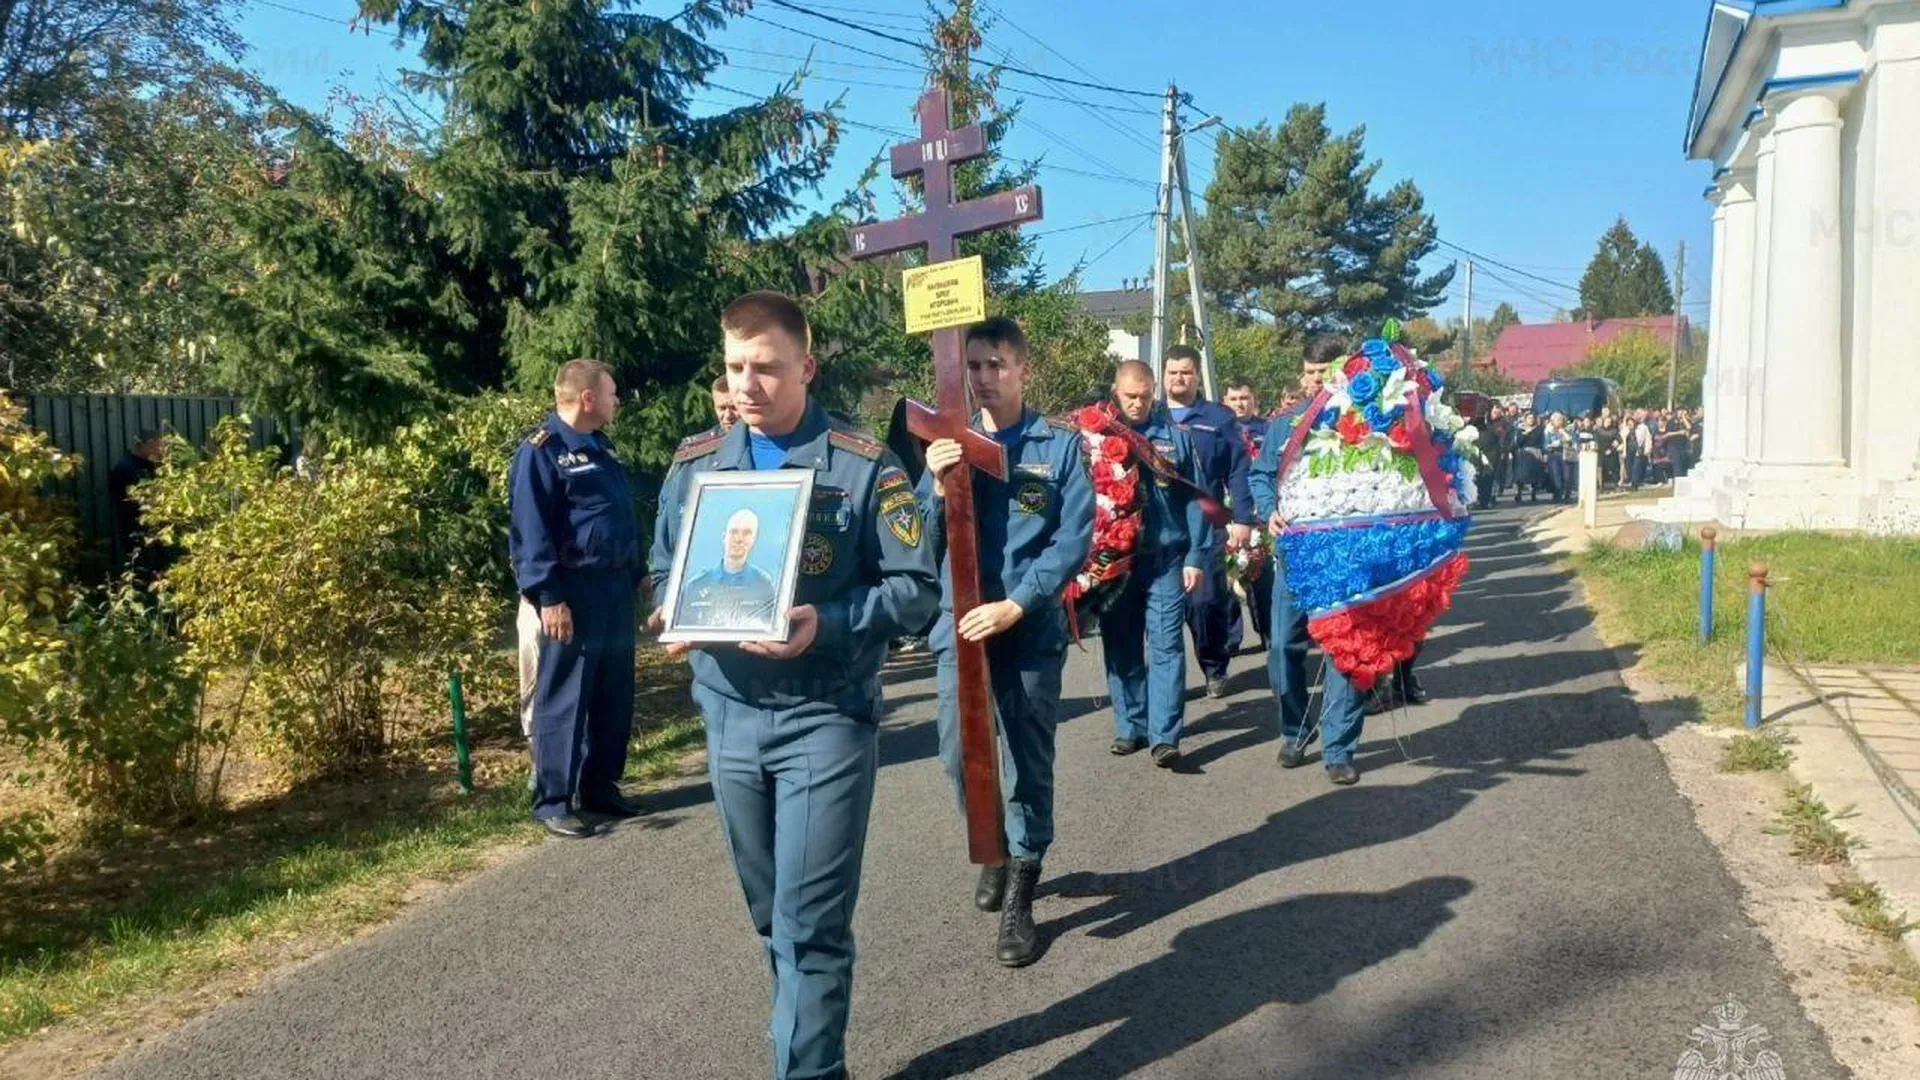 Погибшего на месте взрыва газа спасателя Олега Калмыкова похоронили в Подмосковье с воинскими почестями